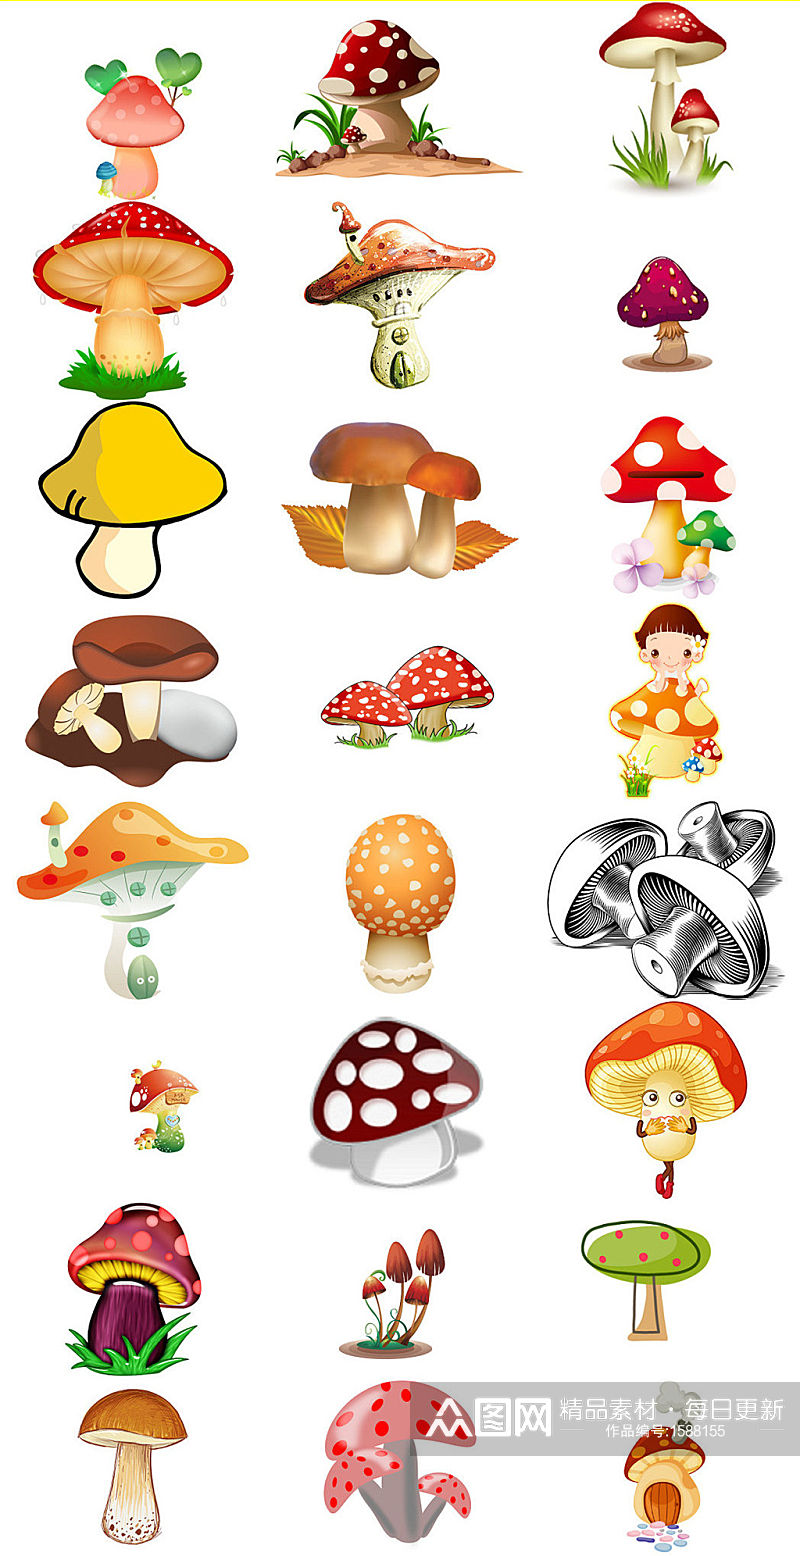 可爱卡通蘑菇图片大全素材